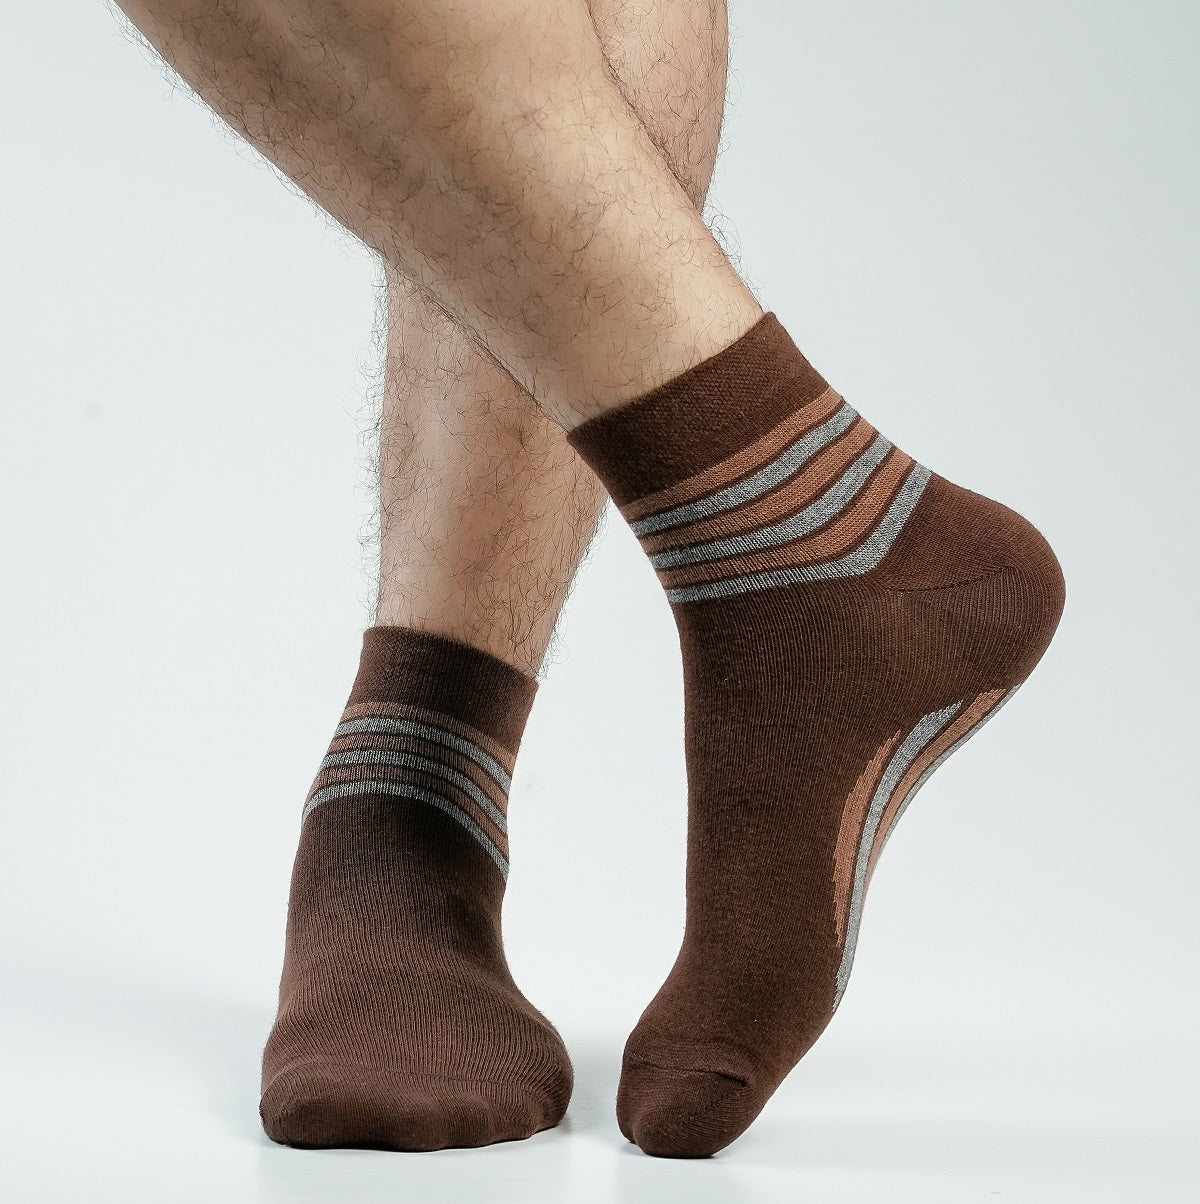 Blank Star Ankle Socks For Men